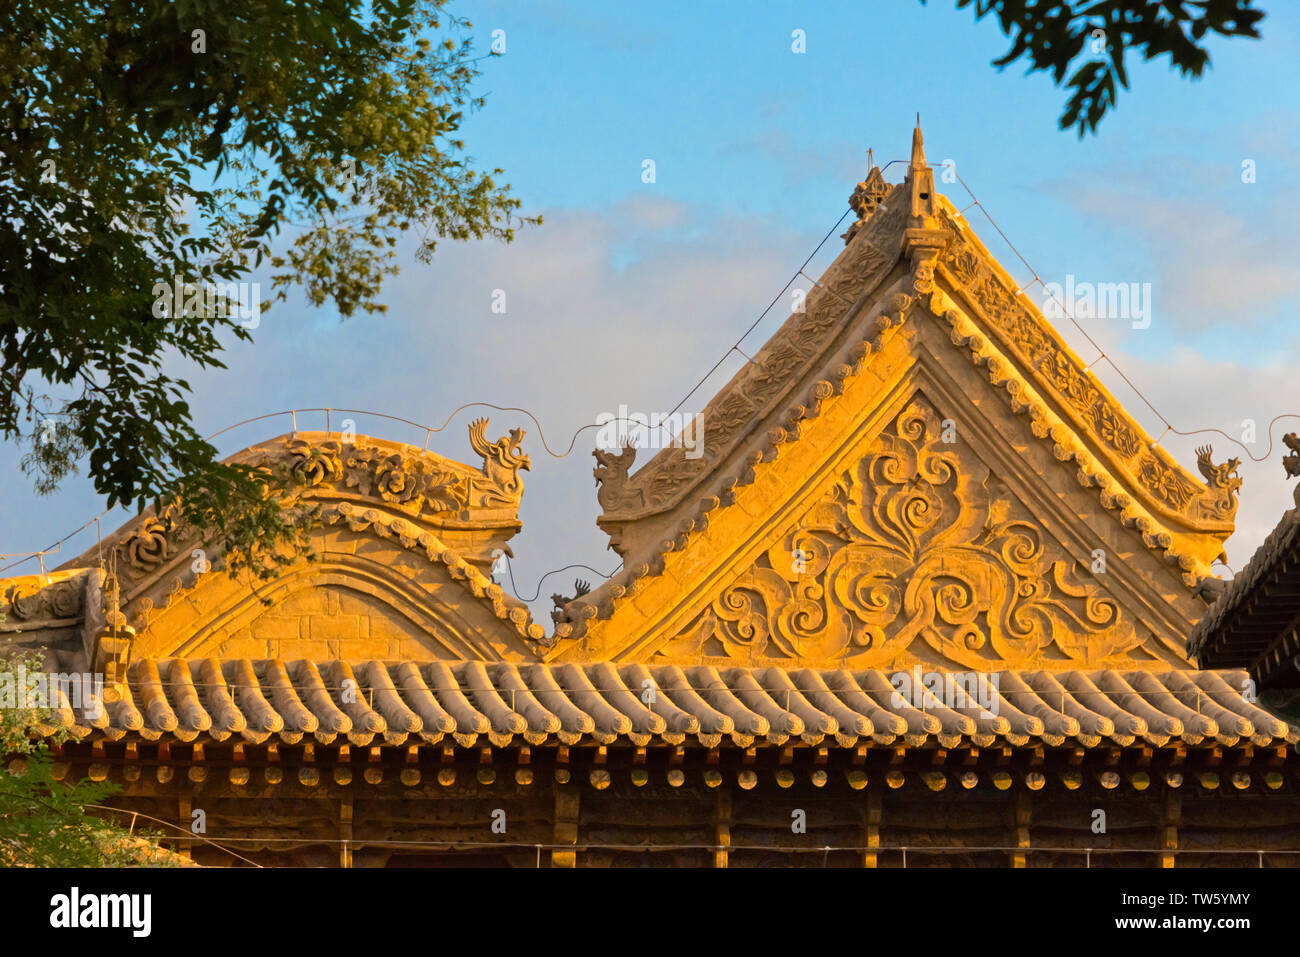 Dettagli architettonici di Dafo (Grande Buddha) Tempio, Zhangye, provincia di Gansu, Cina Foto Stock